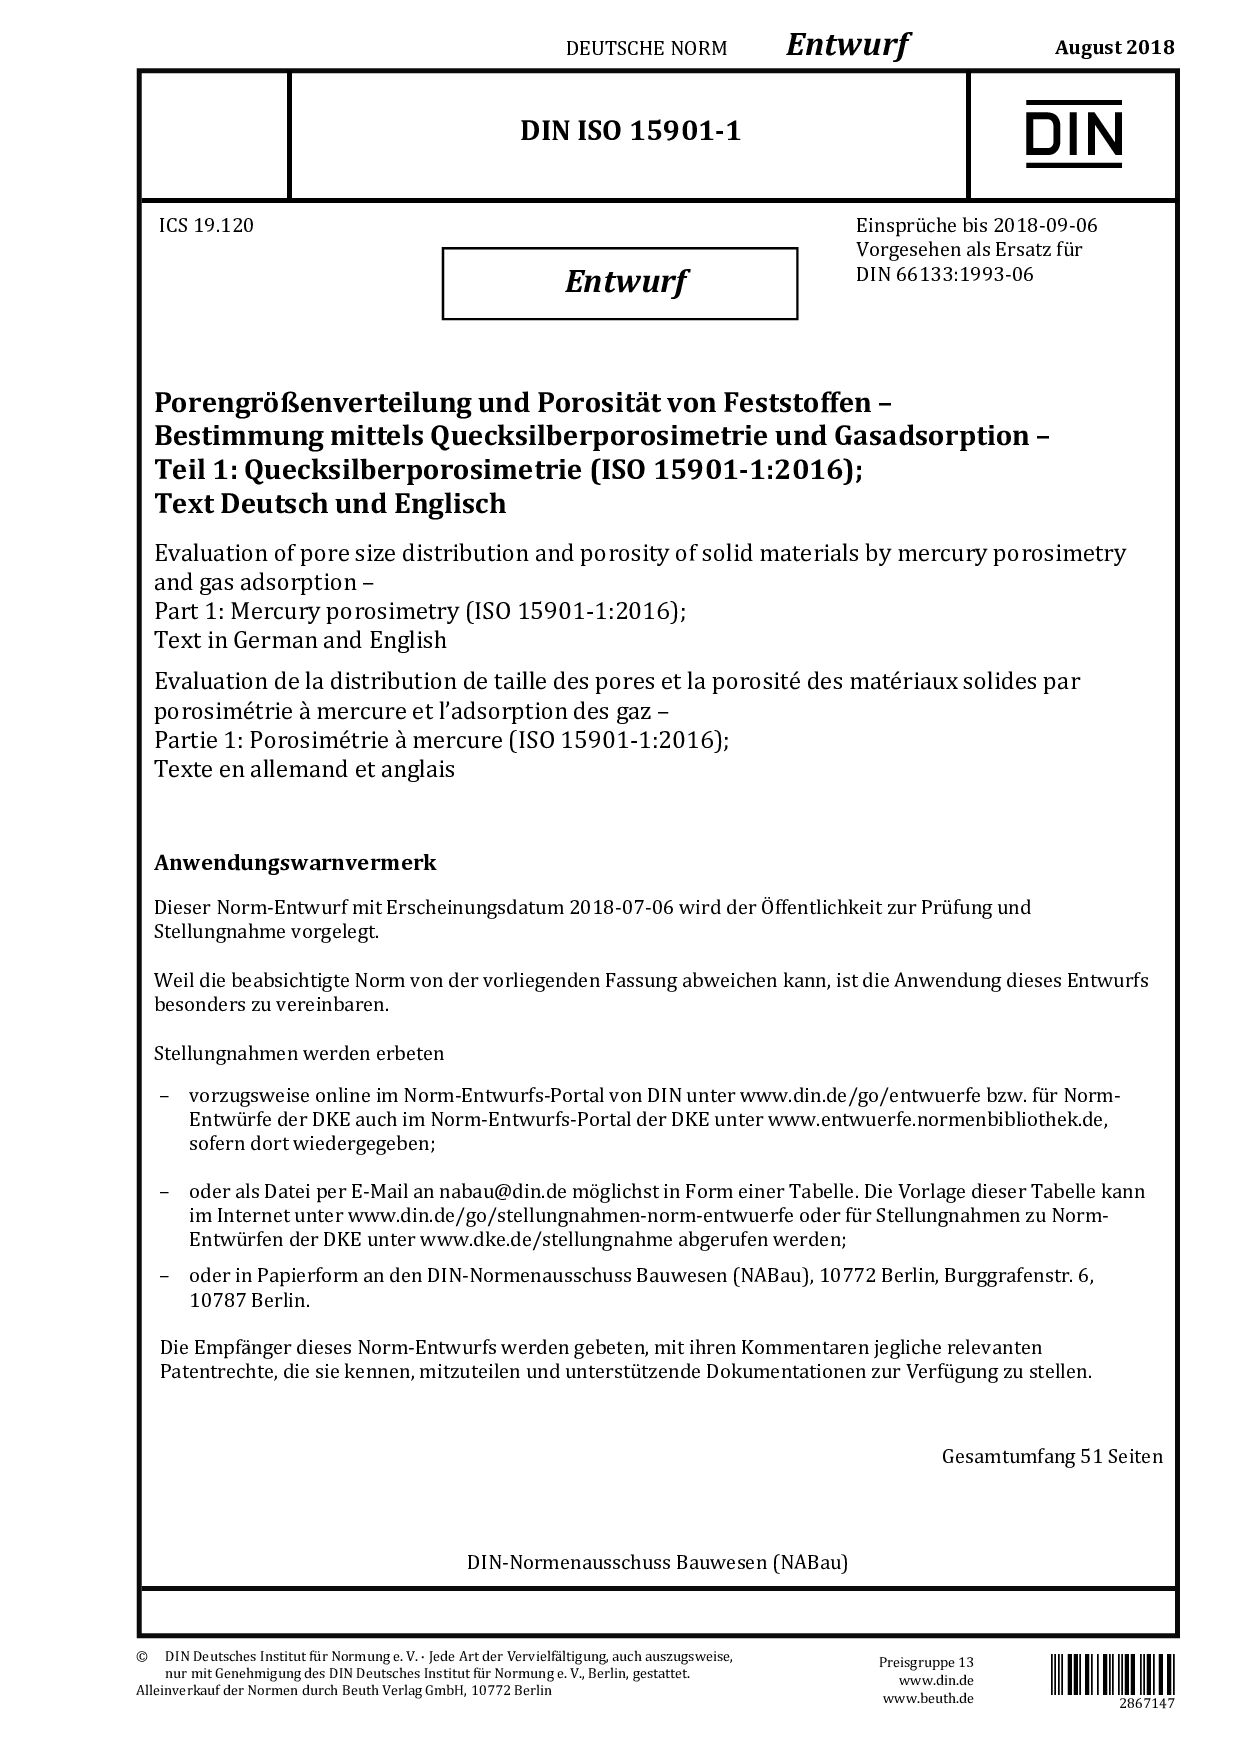 DIN ISO 15901-1 E:2018-08